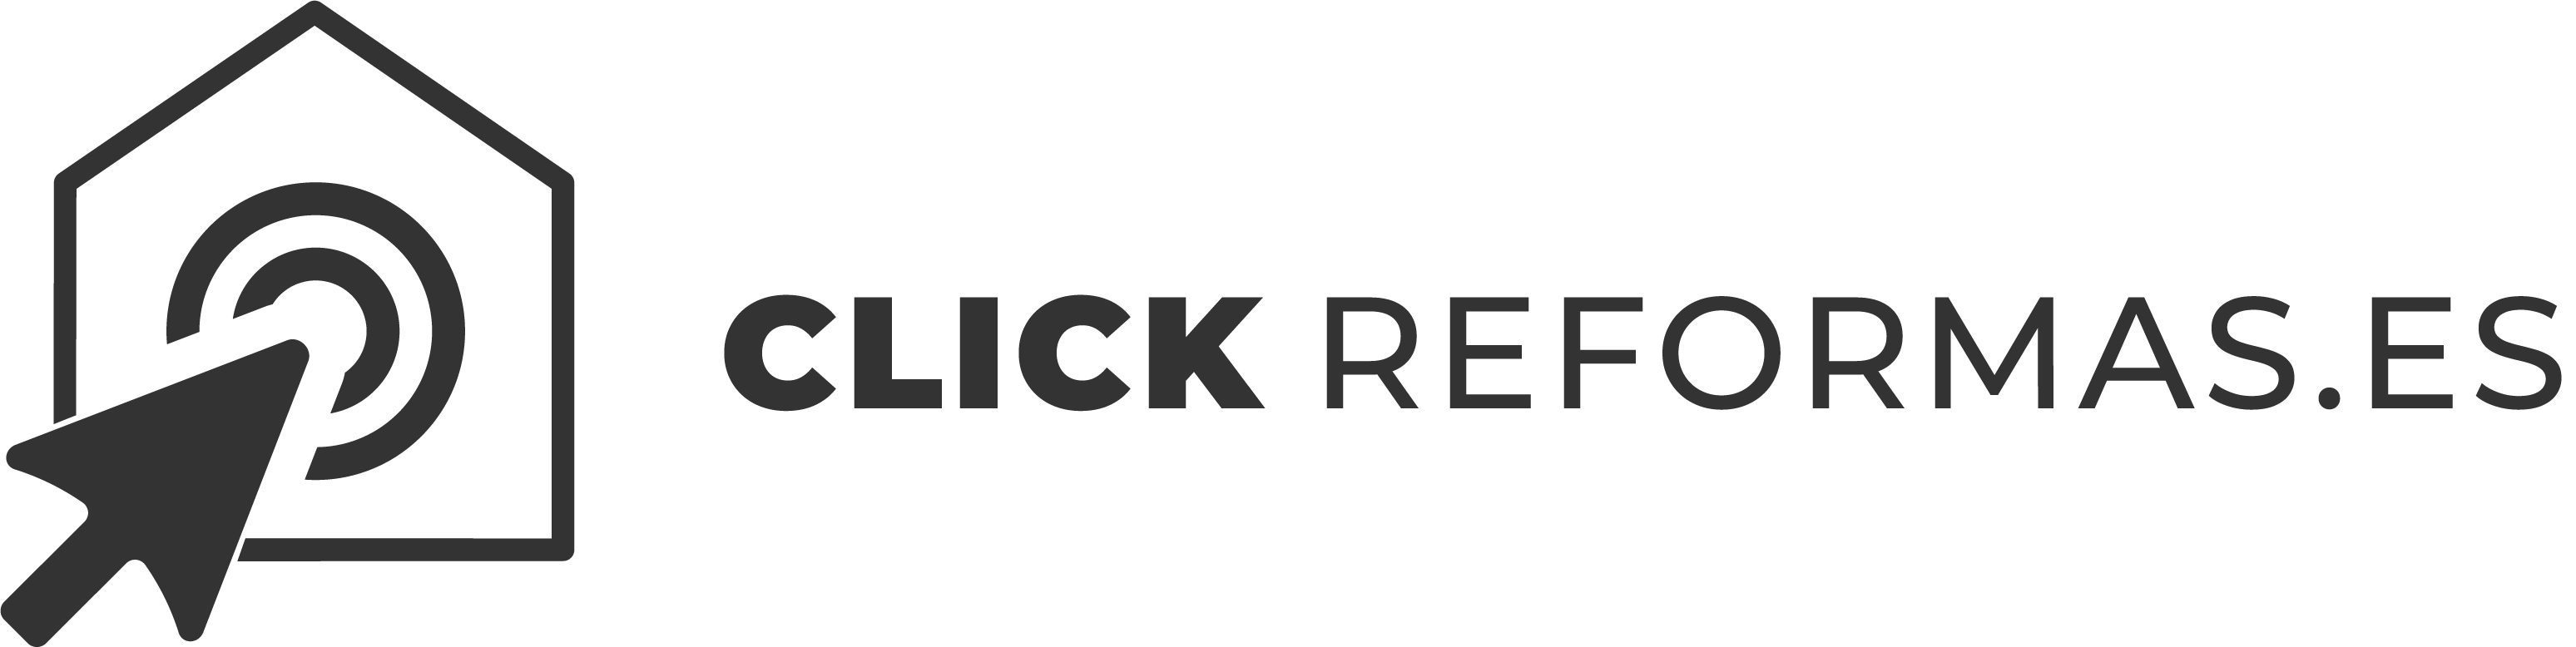 click reformas logotipo negro